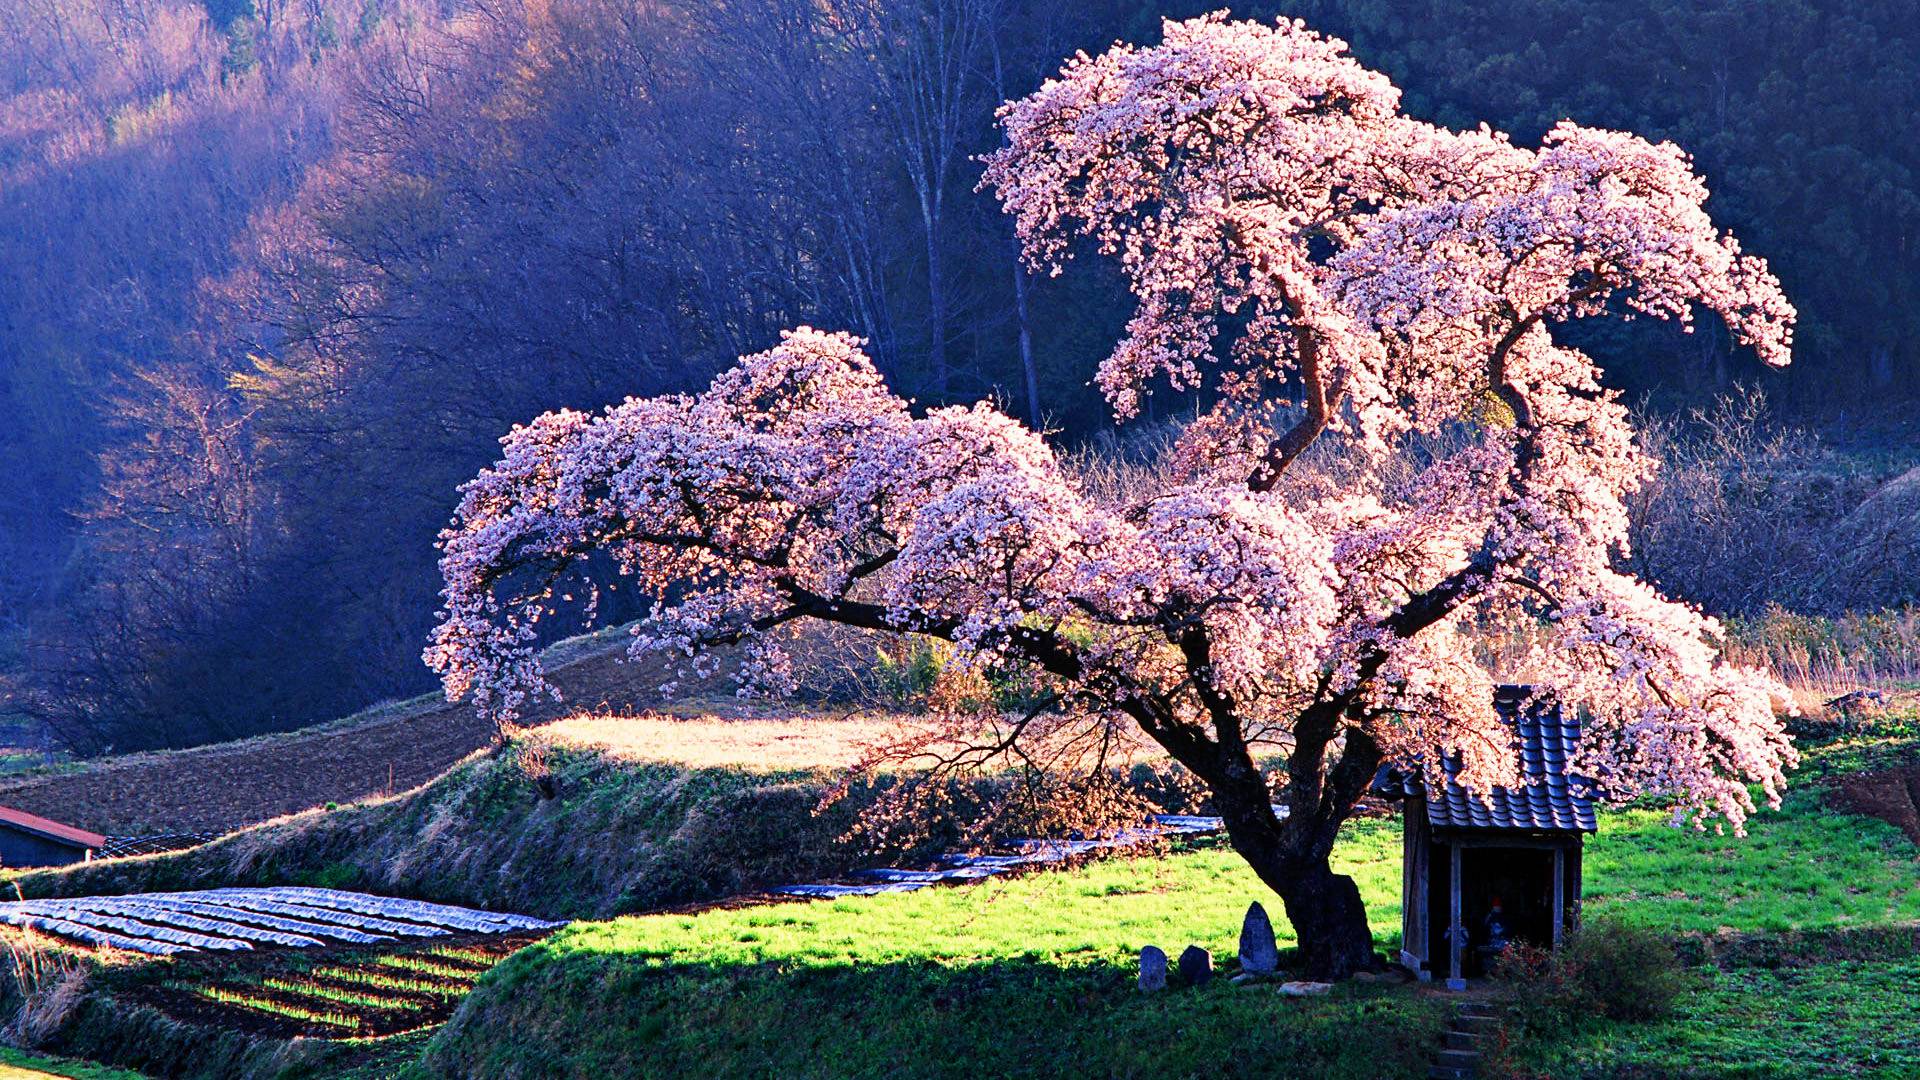 دانلود زیبا ترین درخت هلو با شکوه های زیبا با کیفیت عالی 